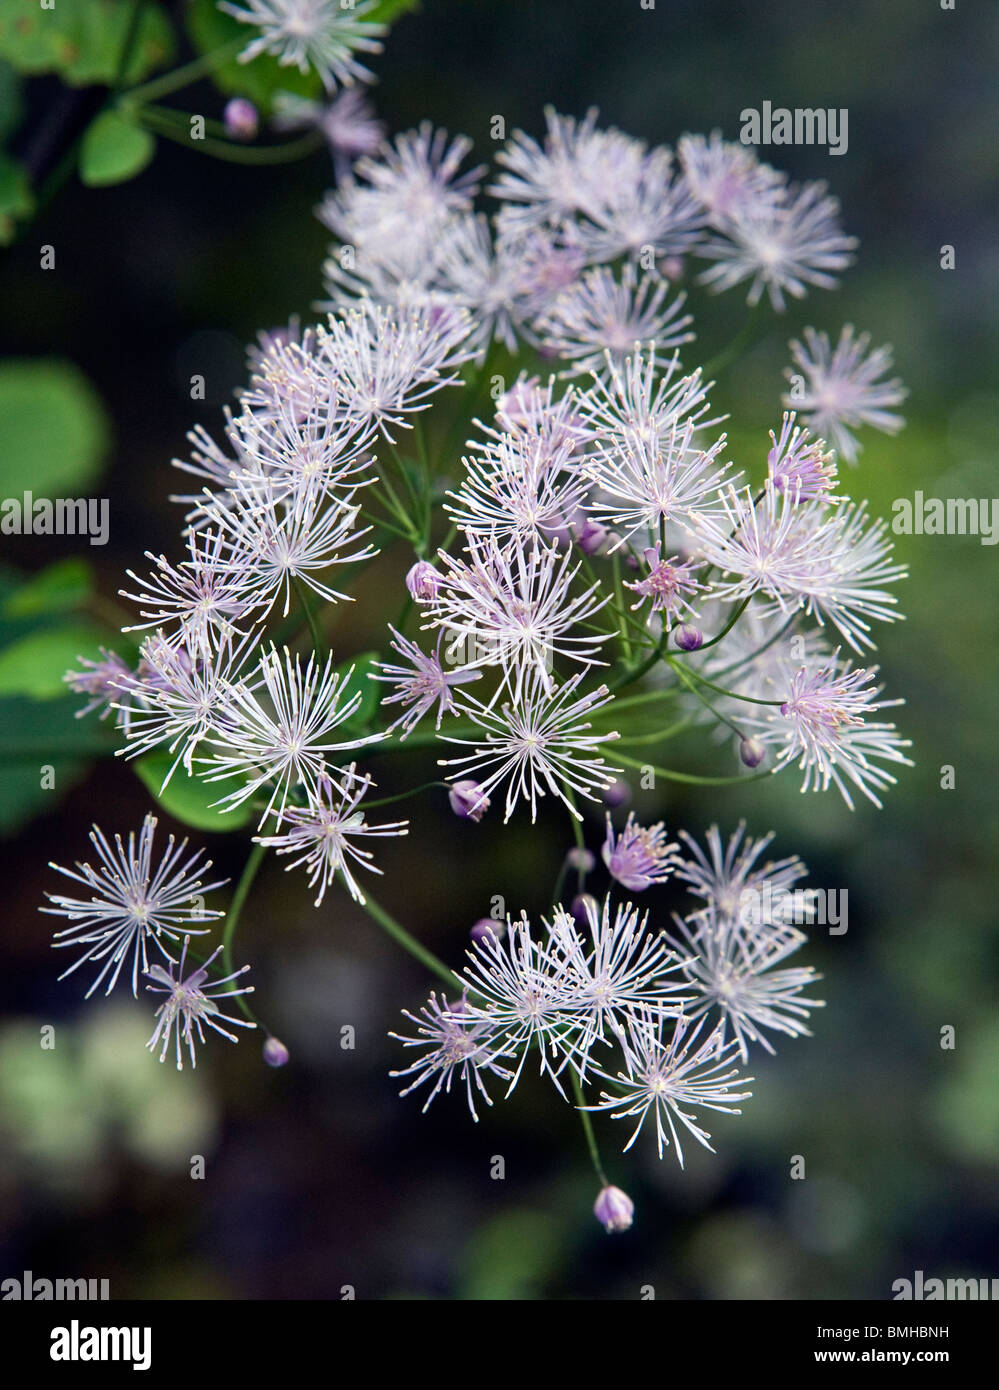 Thalictrum aquilegifolium Columbine meadow rue flowers in close-up Stock Photo